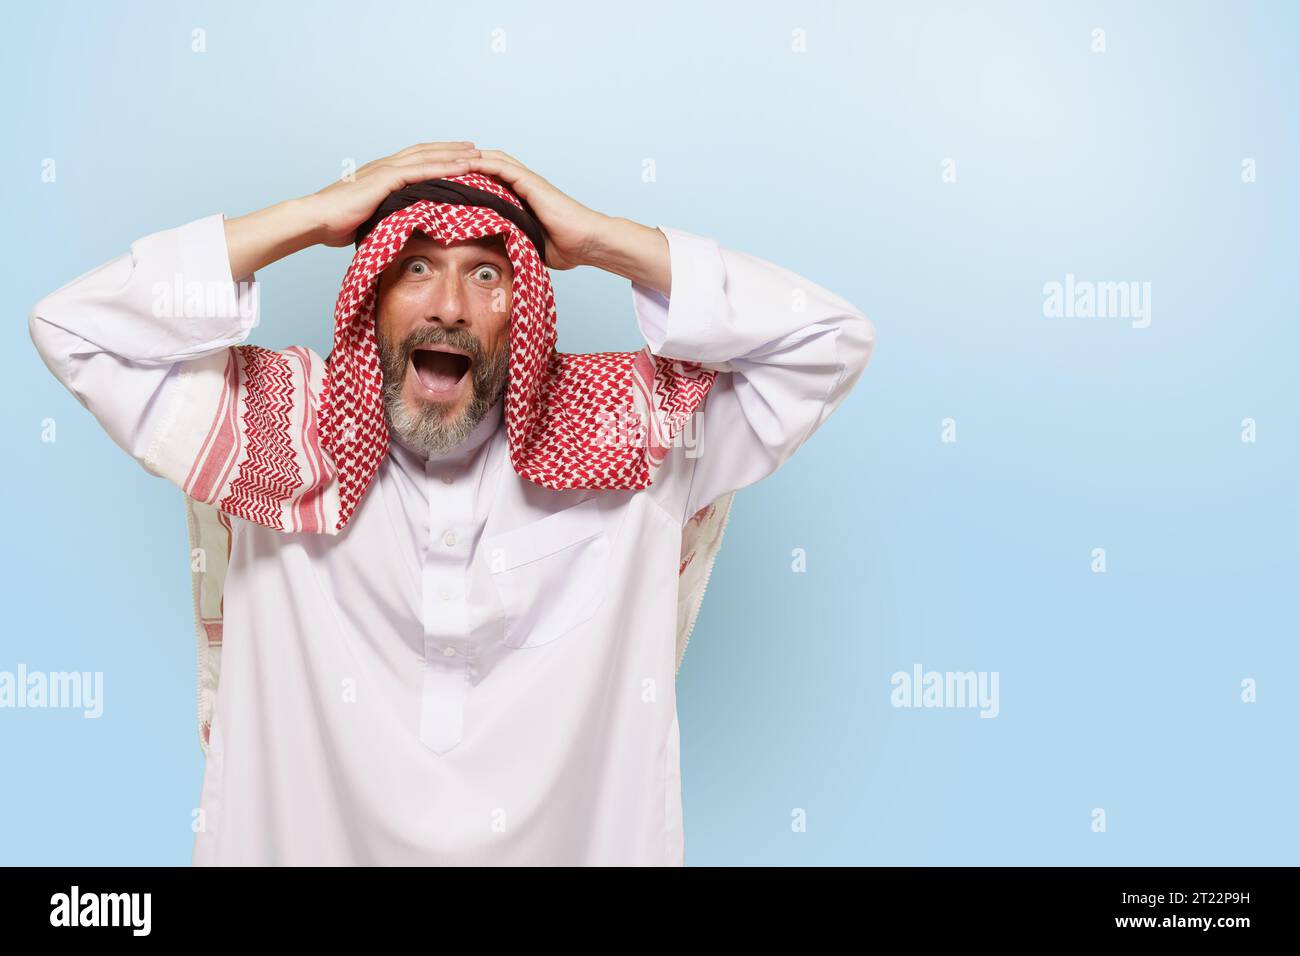 Aufgeregter arabischer Mann aus dem Nahen Osten oder Muslim, in traditioneller Kleidung keffiyeh-Kopftuch, mit einem Lächeln am Kopf. Freude und Stolz des islamischen Volkes, kulturelle Vielfalt und reiche Traditionen der ethnischen Gruppe. Hochwertige Fotos Stockfoto